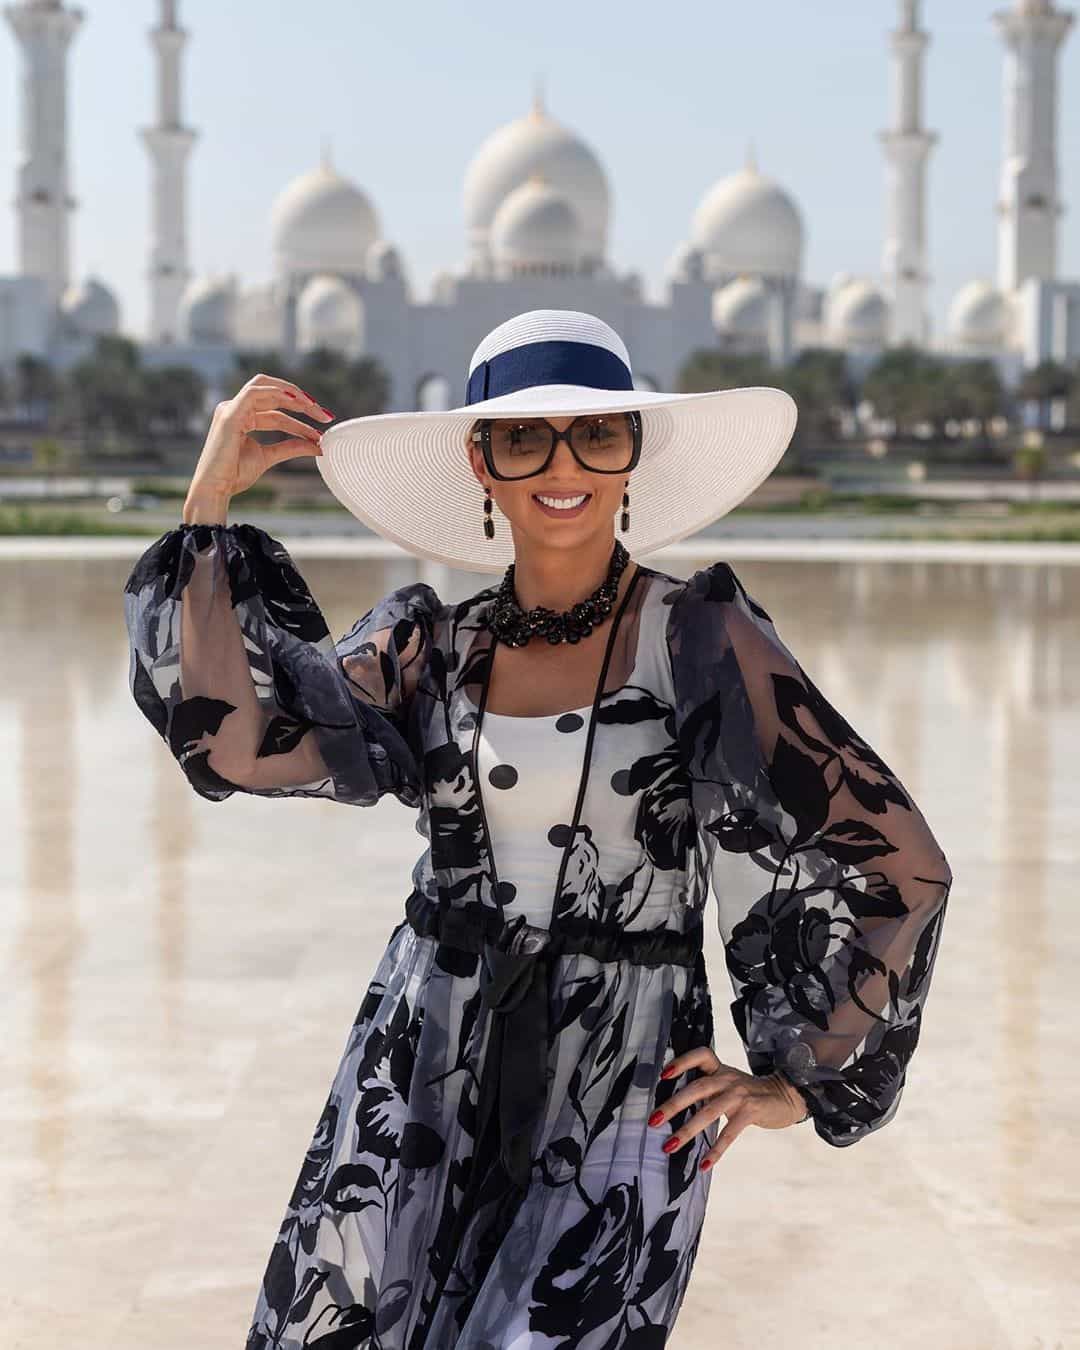 Забронировать Женскую Фотосессию в Дубае и Абу-Даби. Профессиональный Индивидуальный Женский Фотограф в ОАЭ. Дубай Марина, Бурж Халифа, Пляж, Пустыня. Пишите!